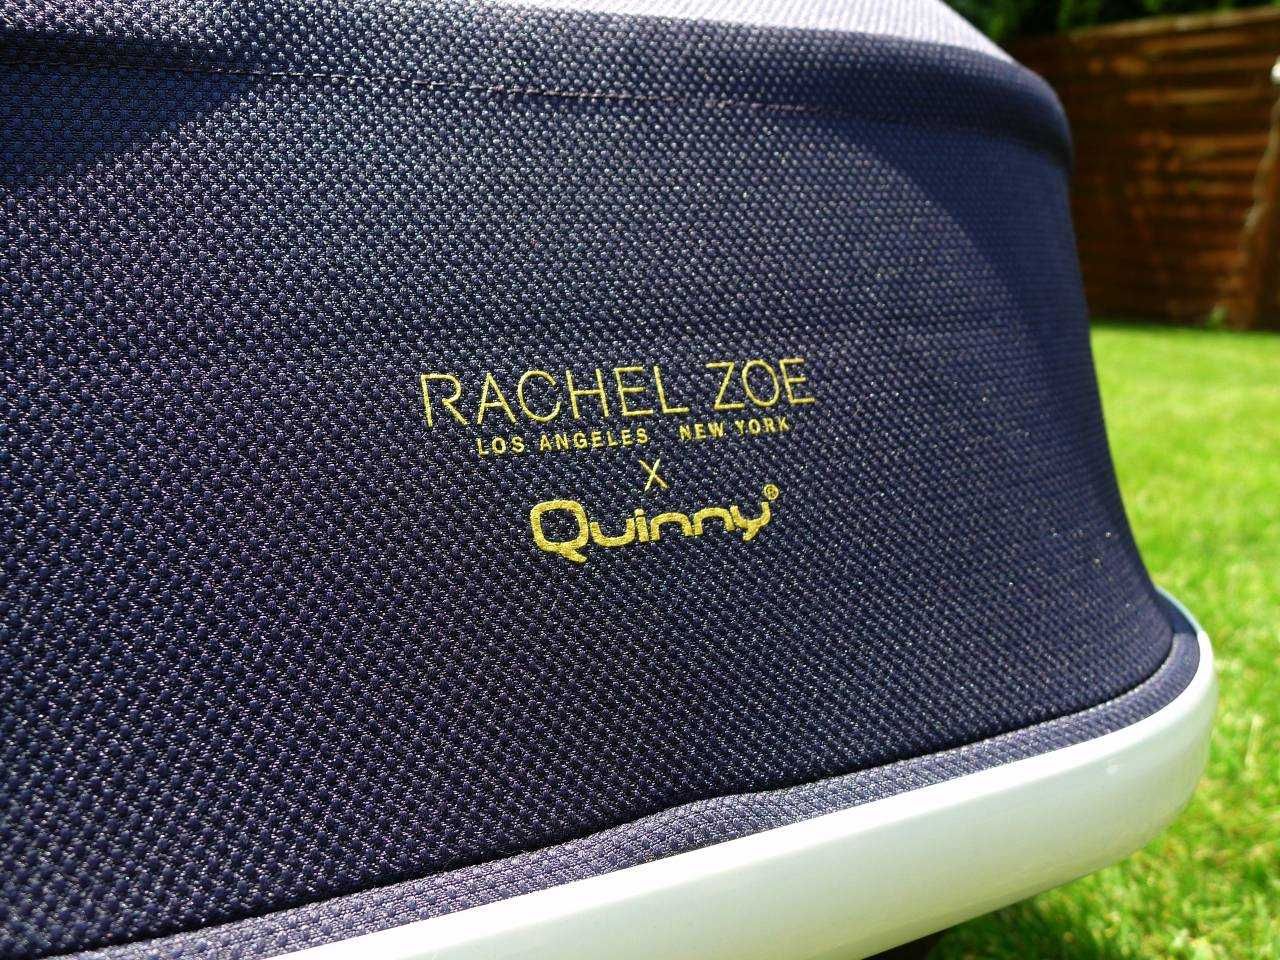 Wózek Quinny Moodd Rachel Zoe 2 w 1  limitowana edcyja